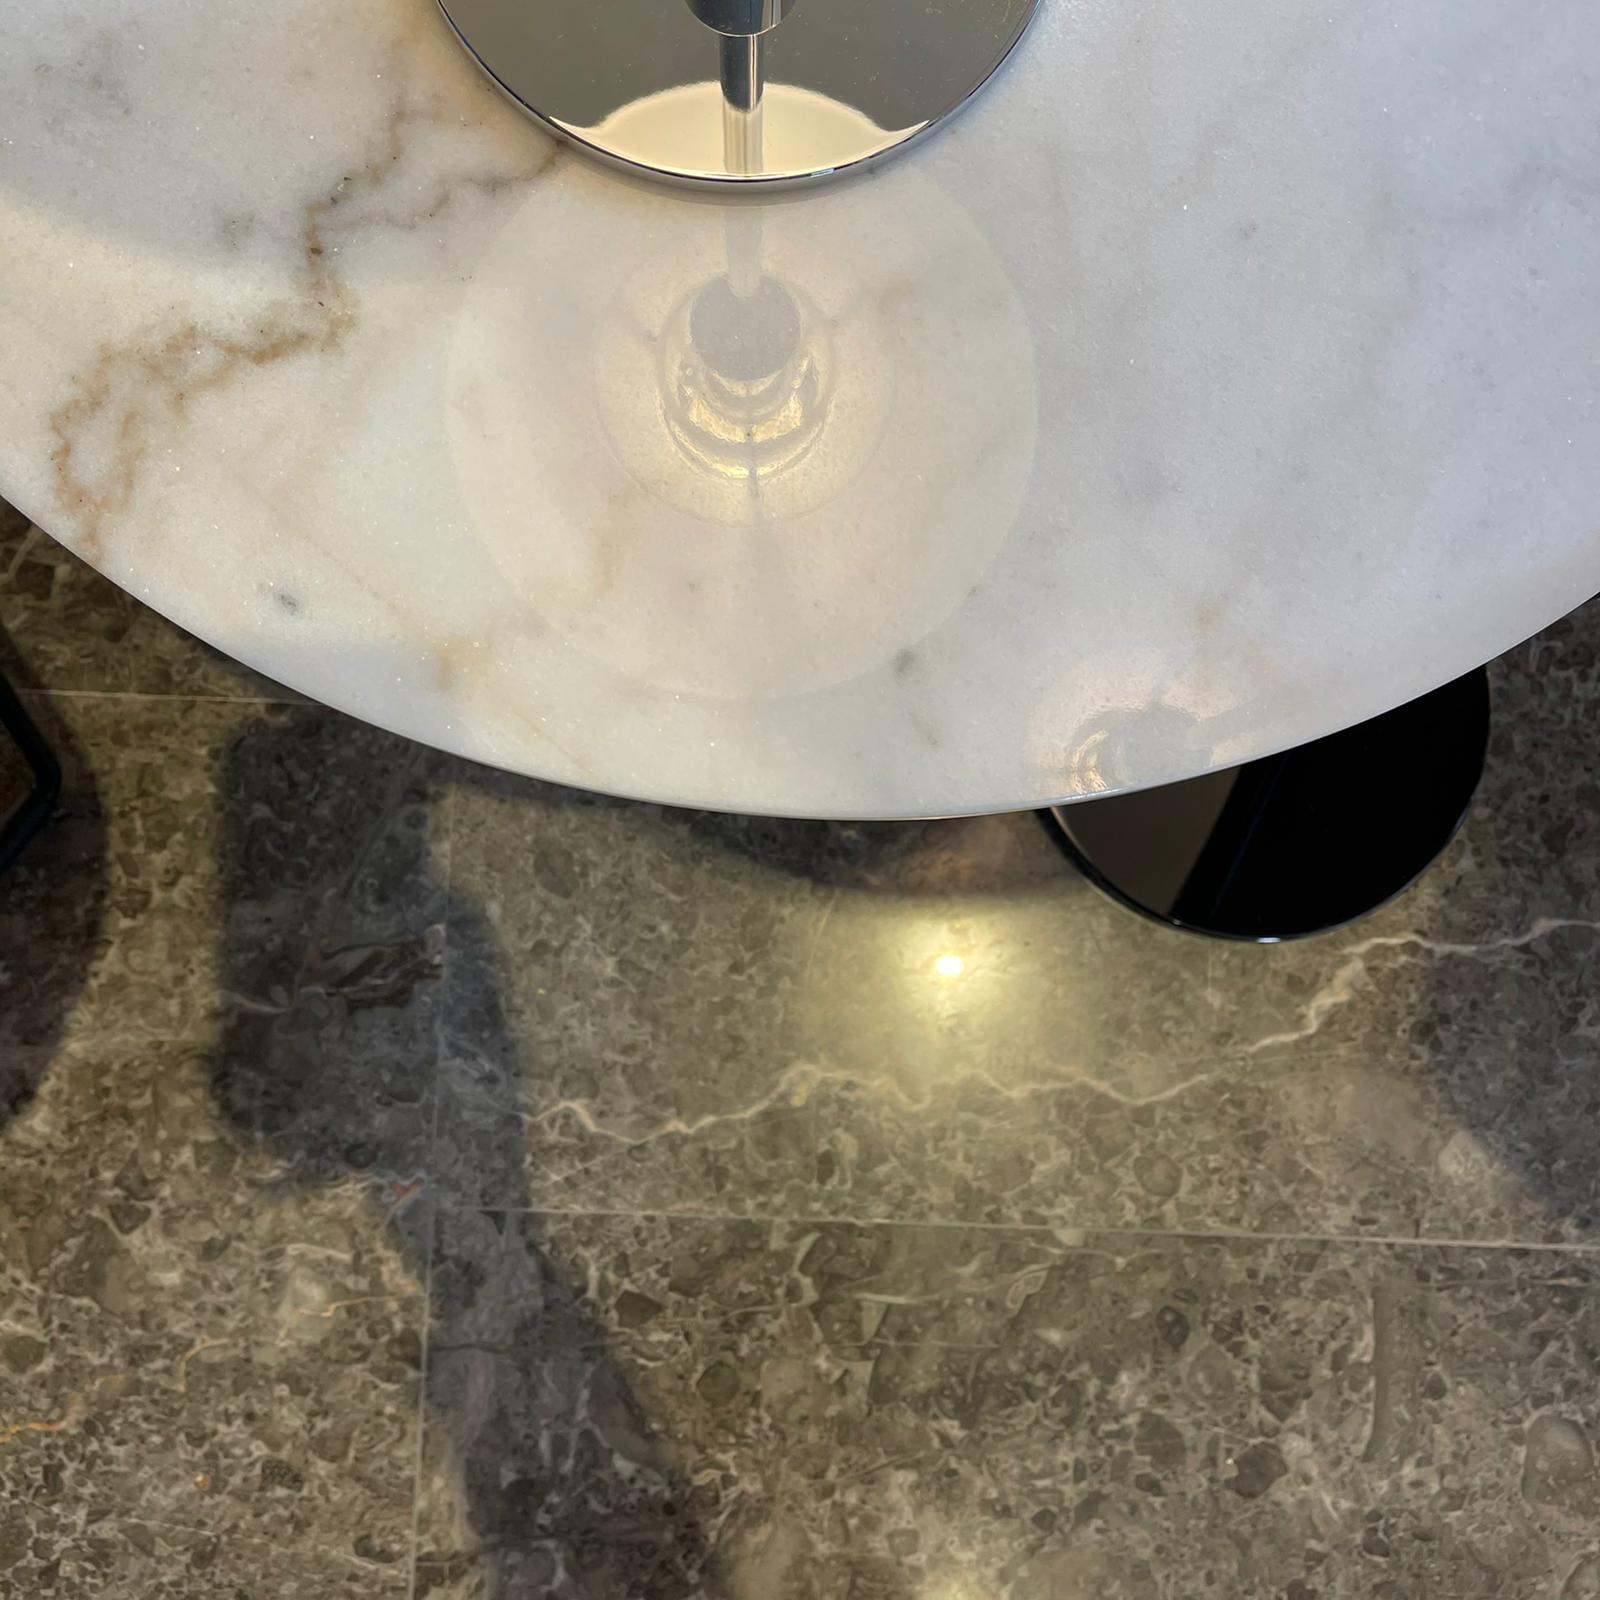 TABLE BASSE FAN Ø 60 cm, Piètement naturel, Plateau marbre blanc de TOM  DIXON